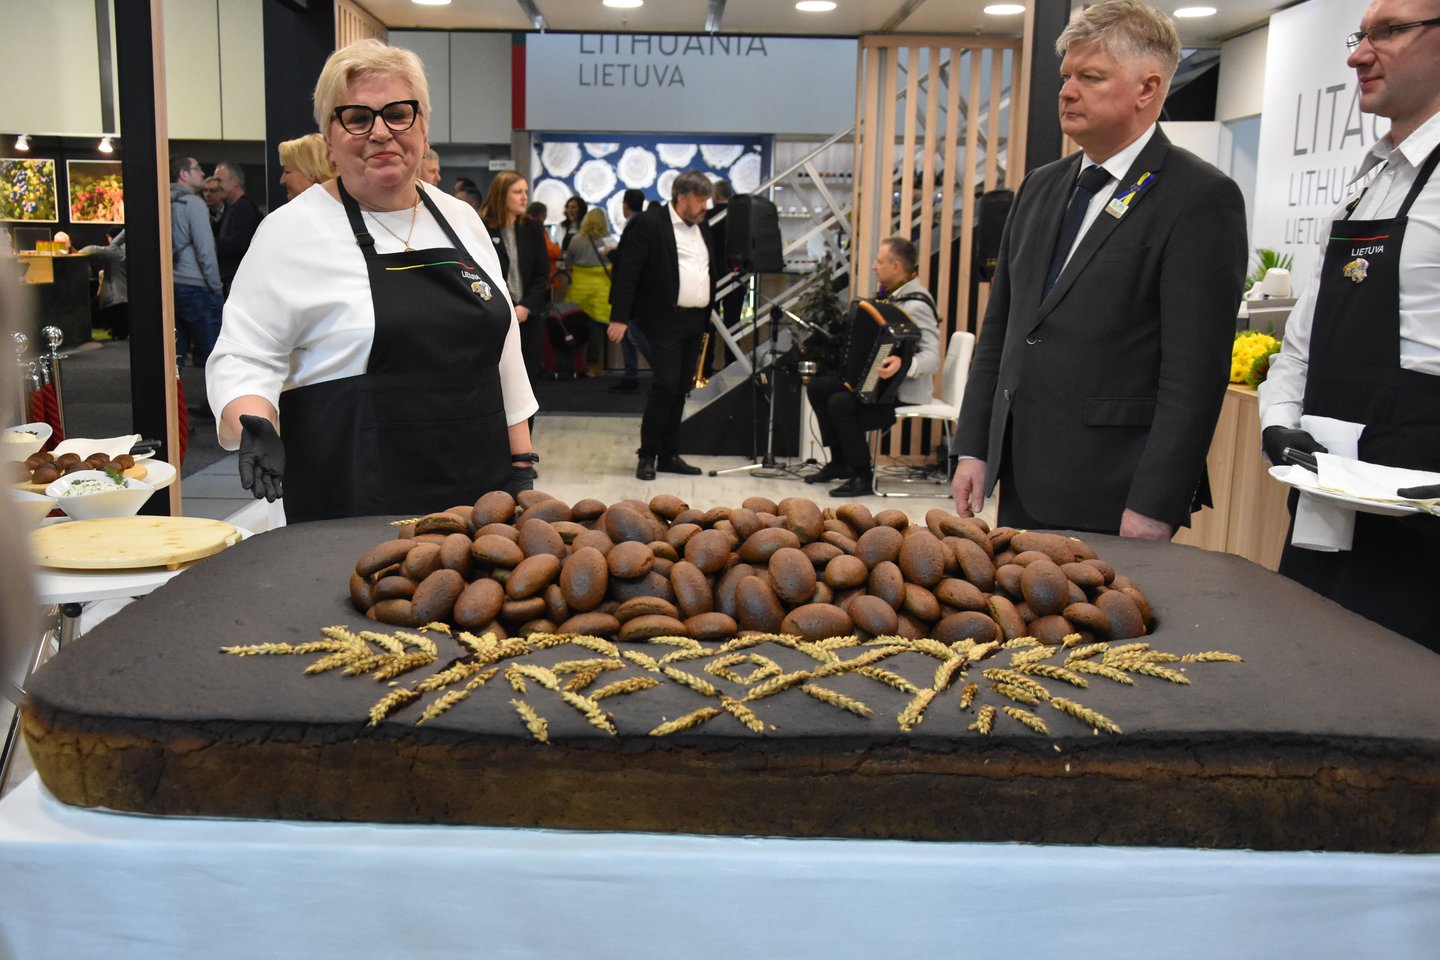 Radviliškių kaimo kepykla parodai iškepė 88 kg svorio duonos kepalą. Ragaujančių ir besigardžiuojančių nepritrūko .<br> A.Srėbalienės nuotr.